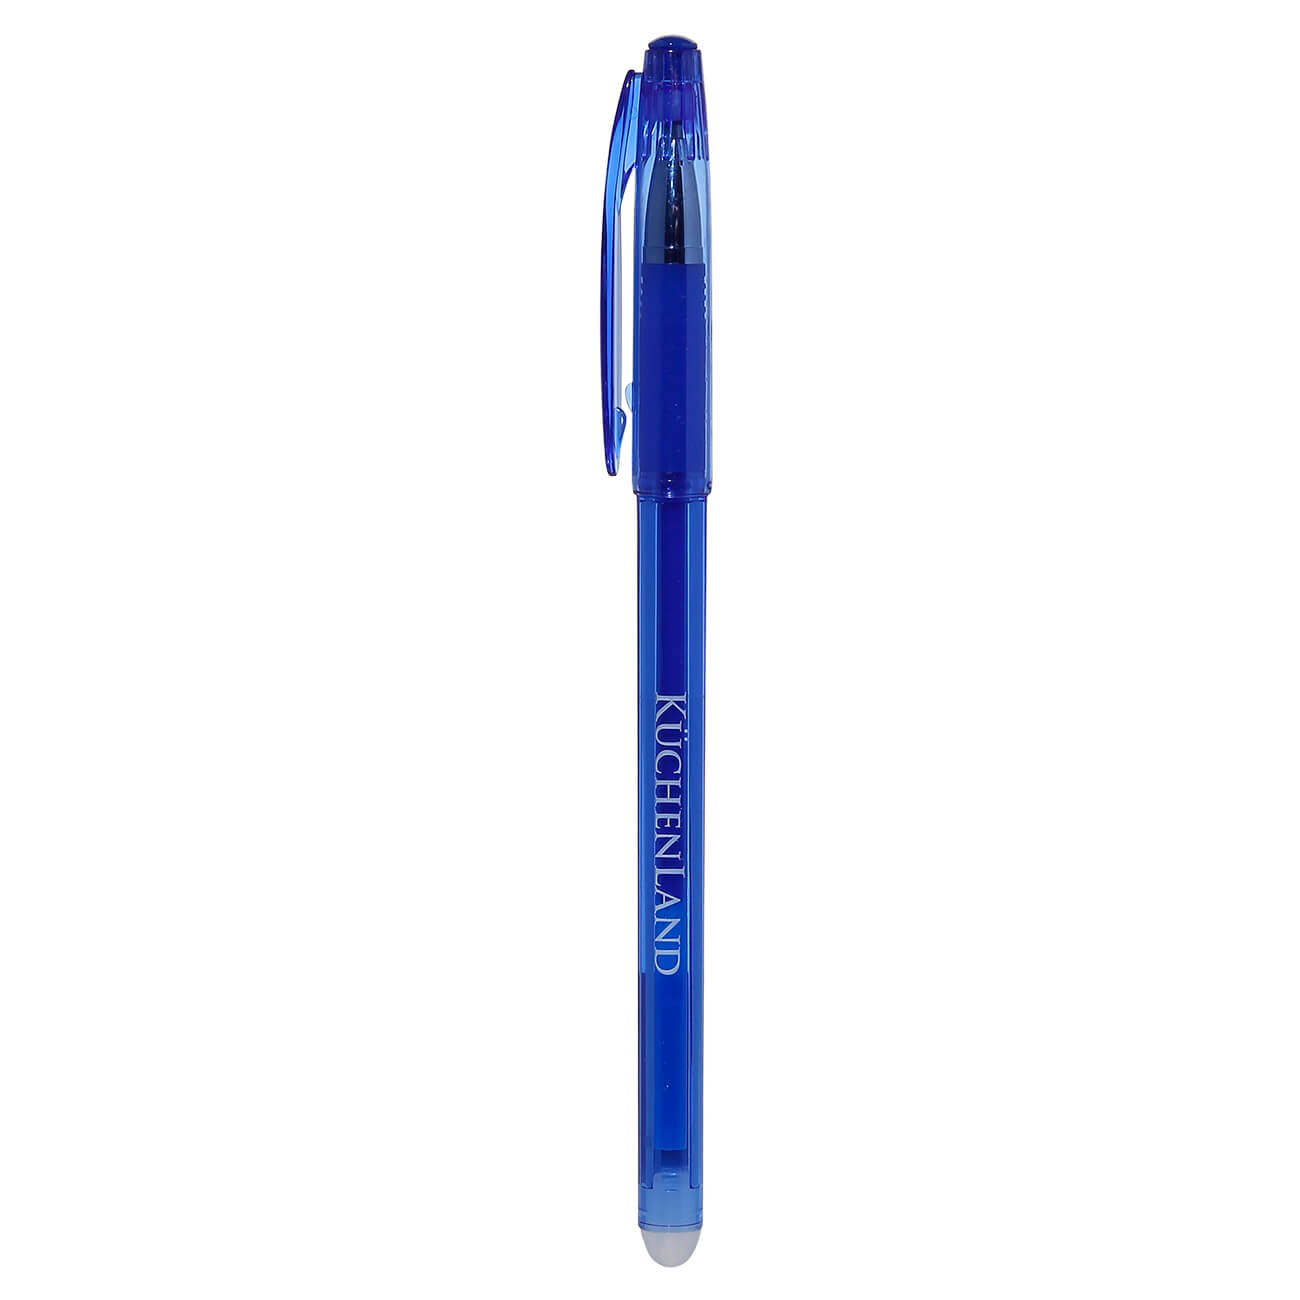 Ручка гелевая, 15 см, стираемые чернила, синяя, Draw пуходерка без капель эргономичная ручка 10 х 15 см синяя